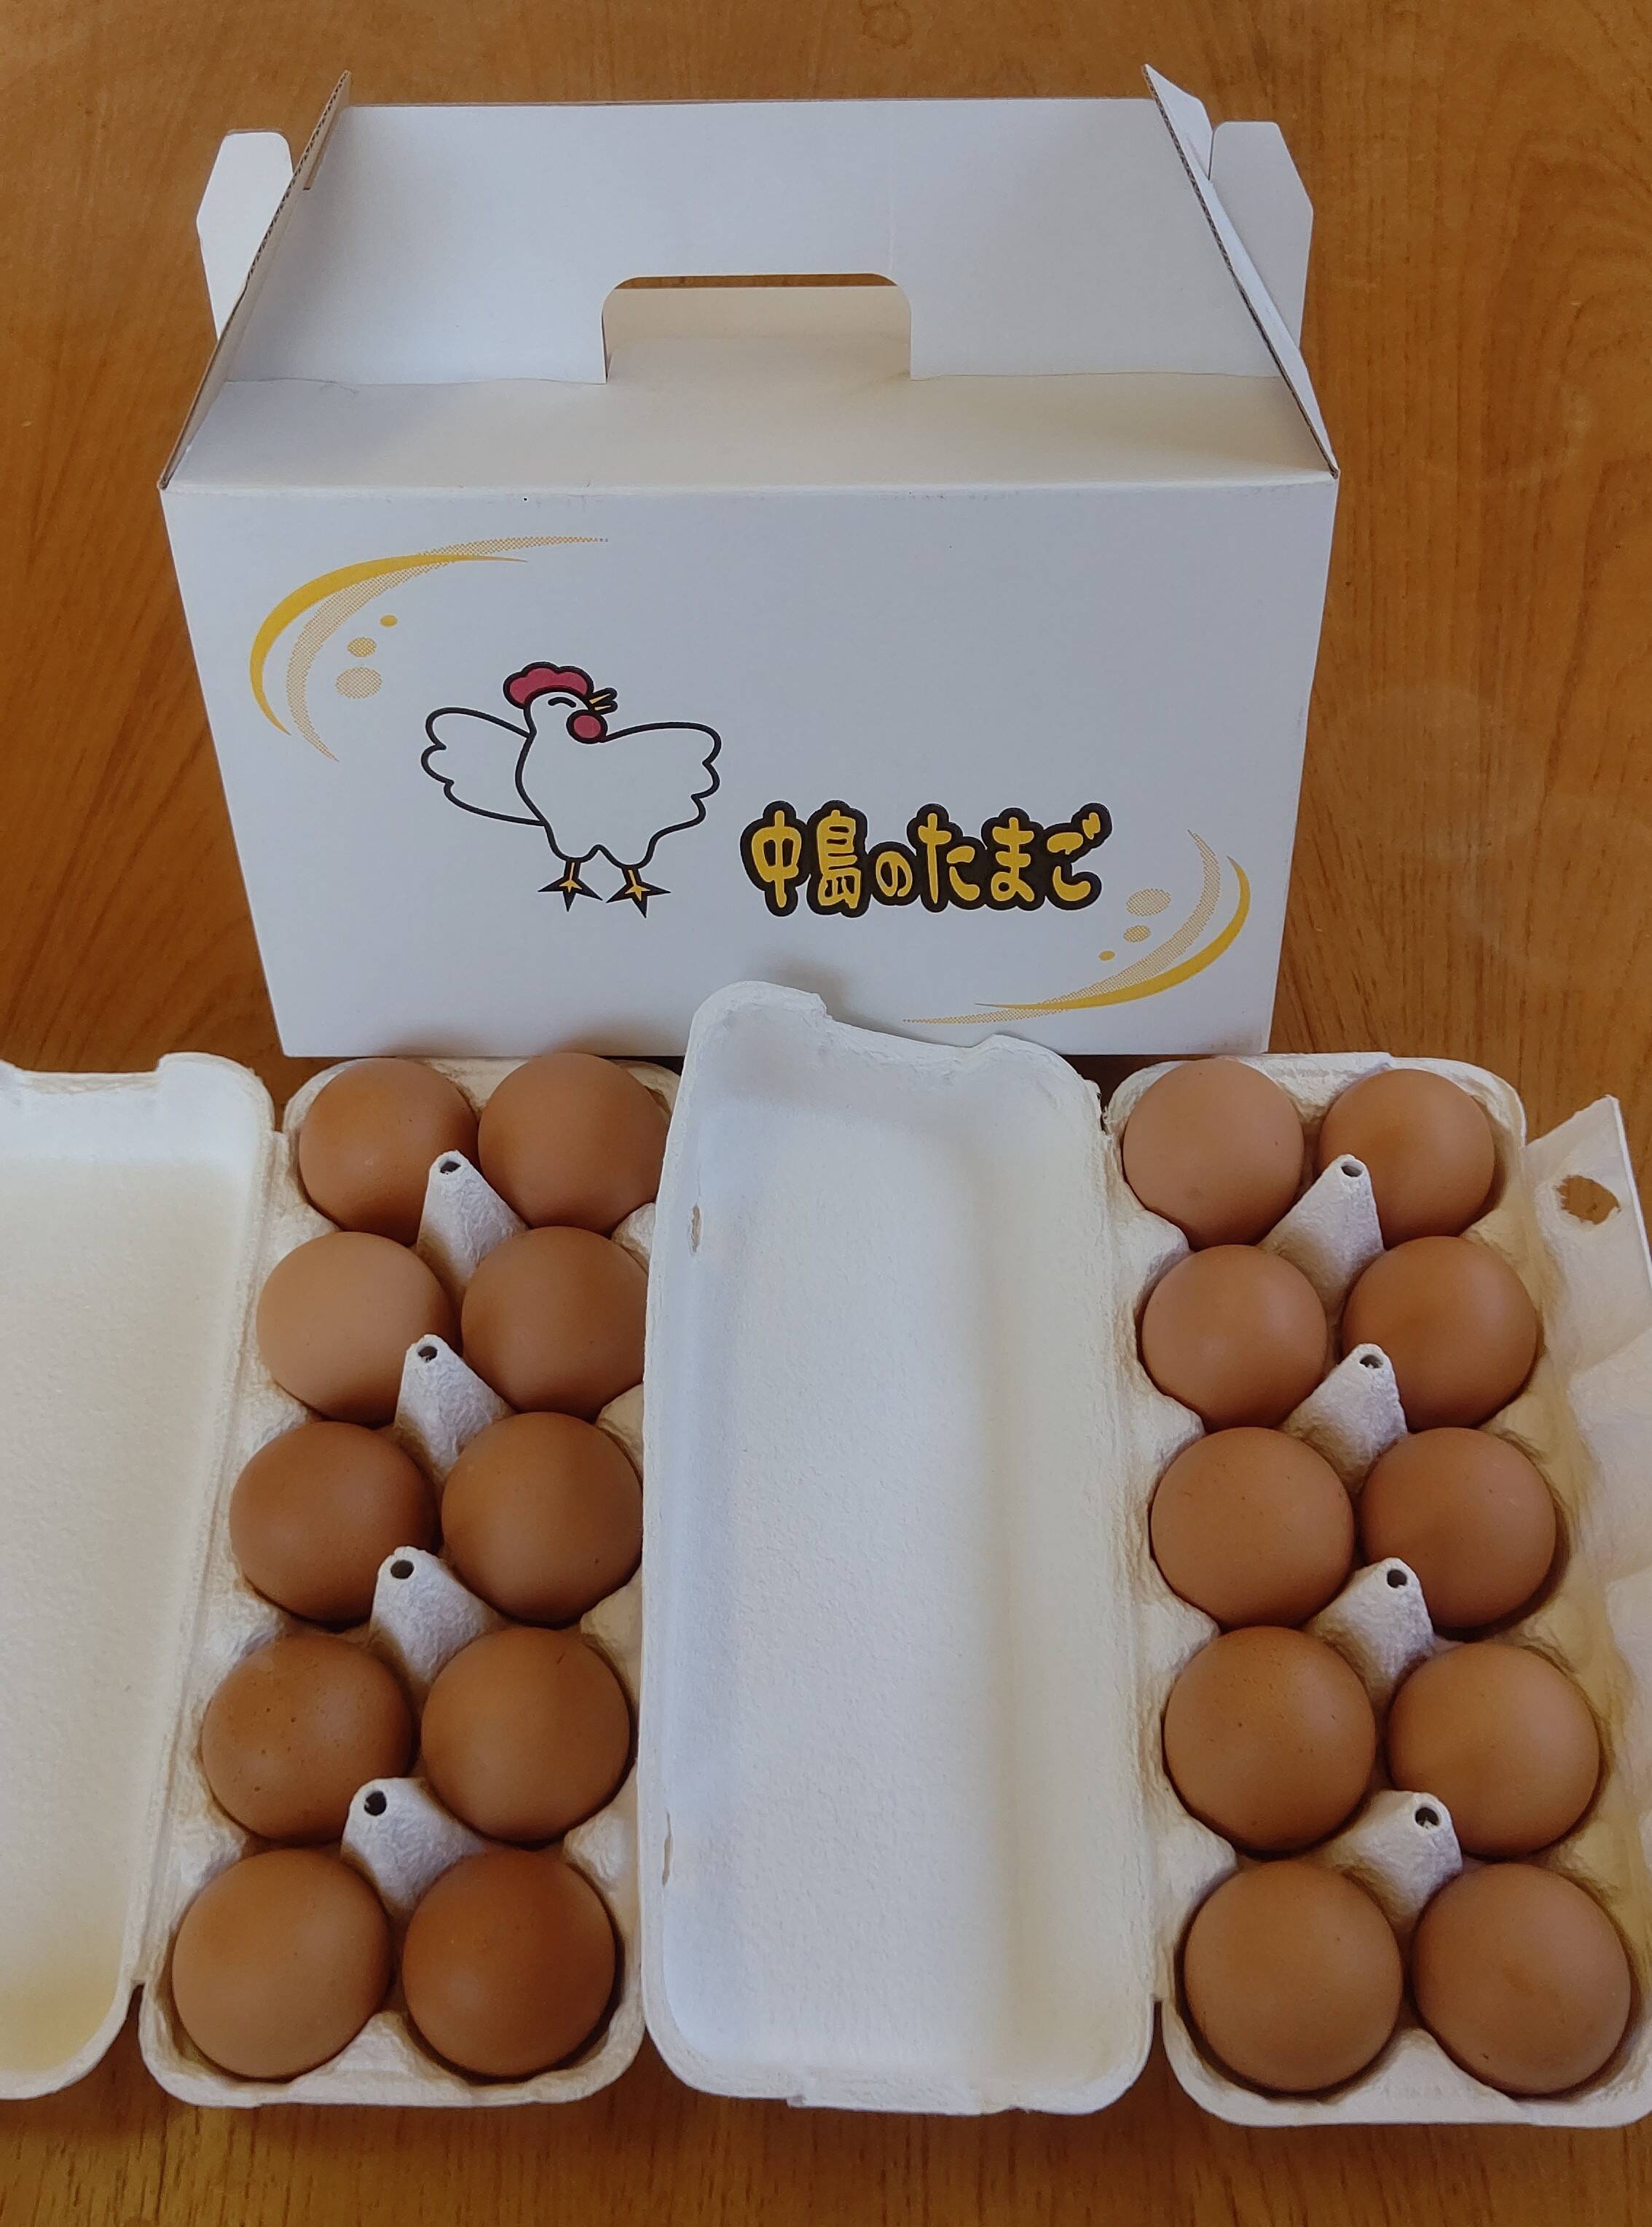 今季も再入荷 幸せな鶏の産みたて卵10個と無農薬の原木生椎茸 クール便で発送